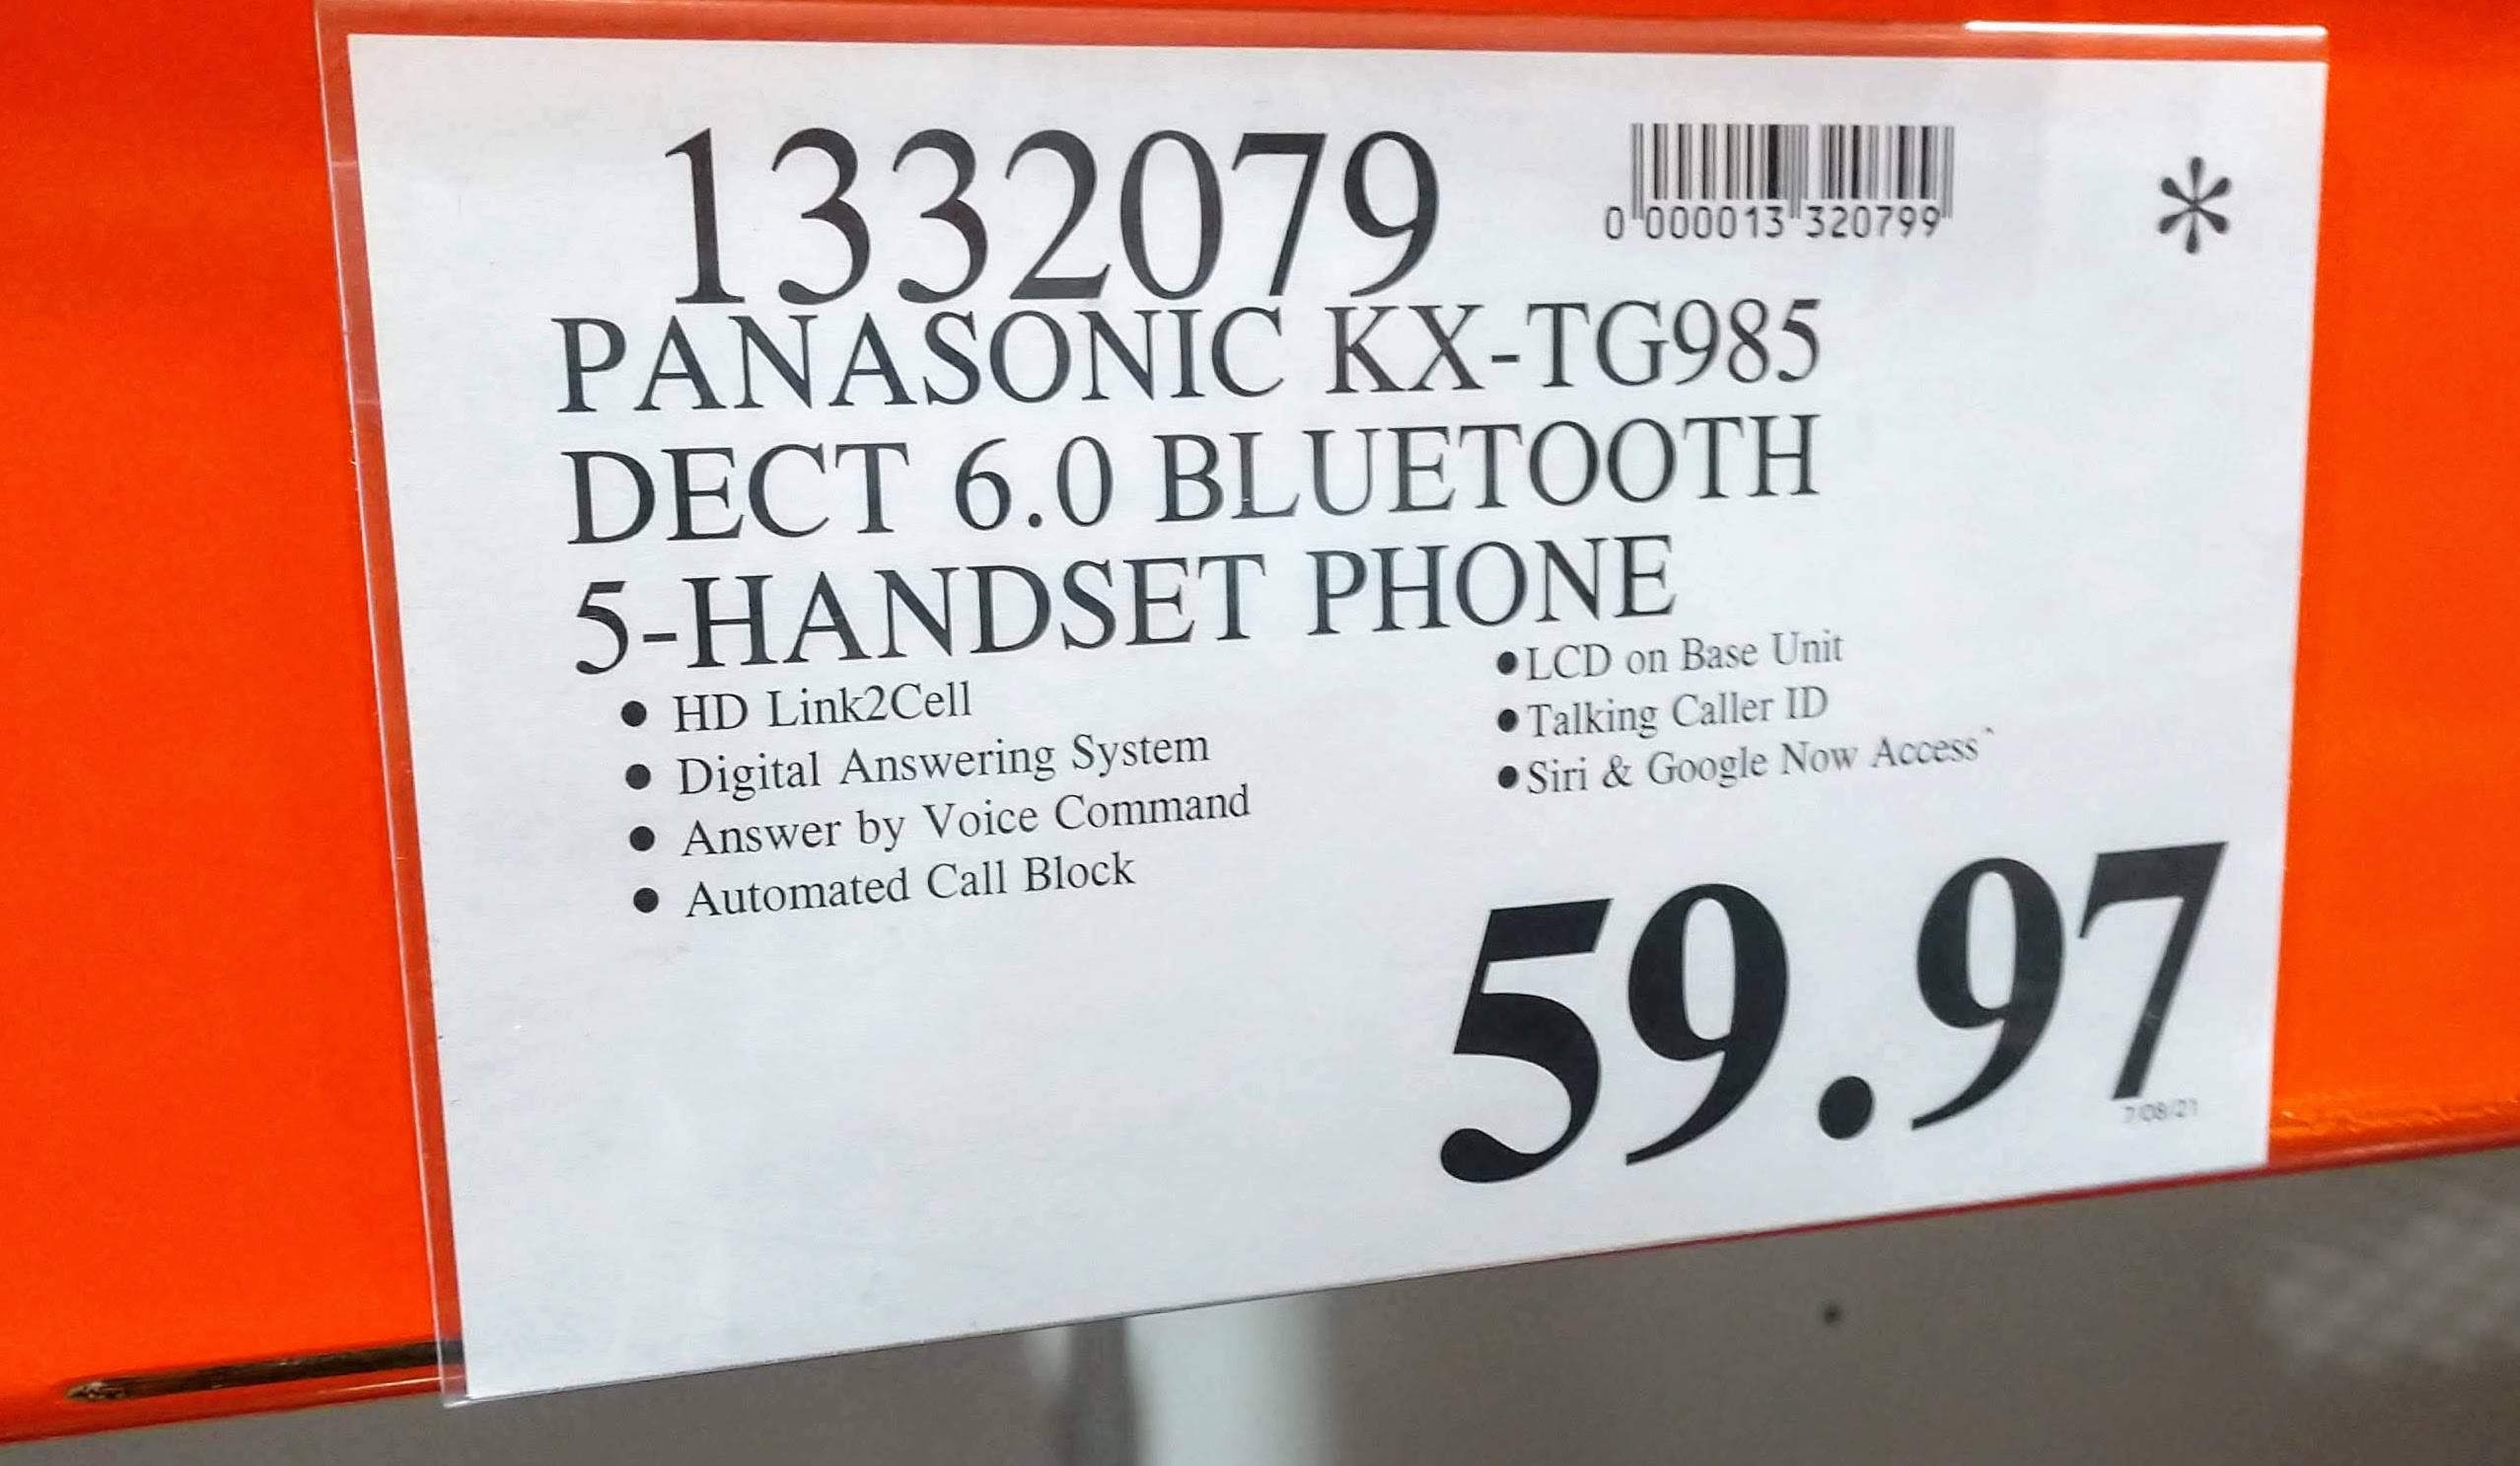 Panasonic cordless phone tg985 5 handset $59.97